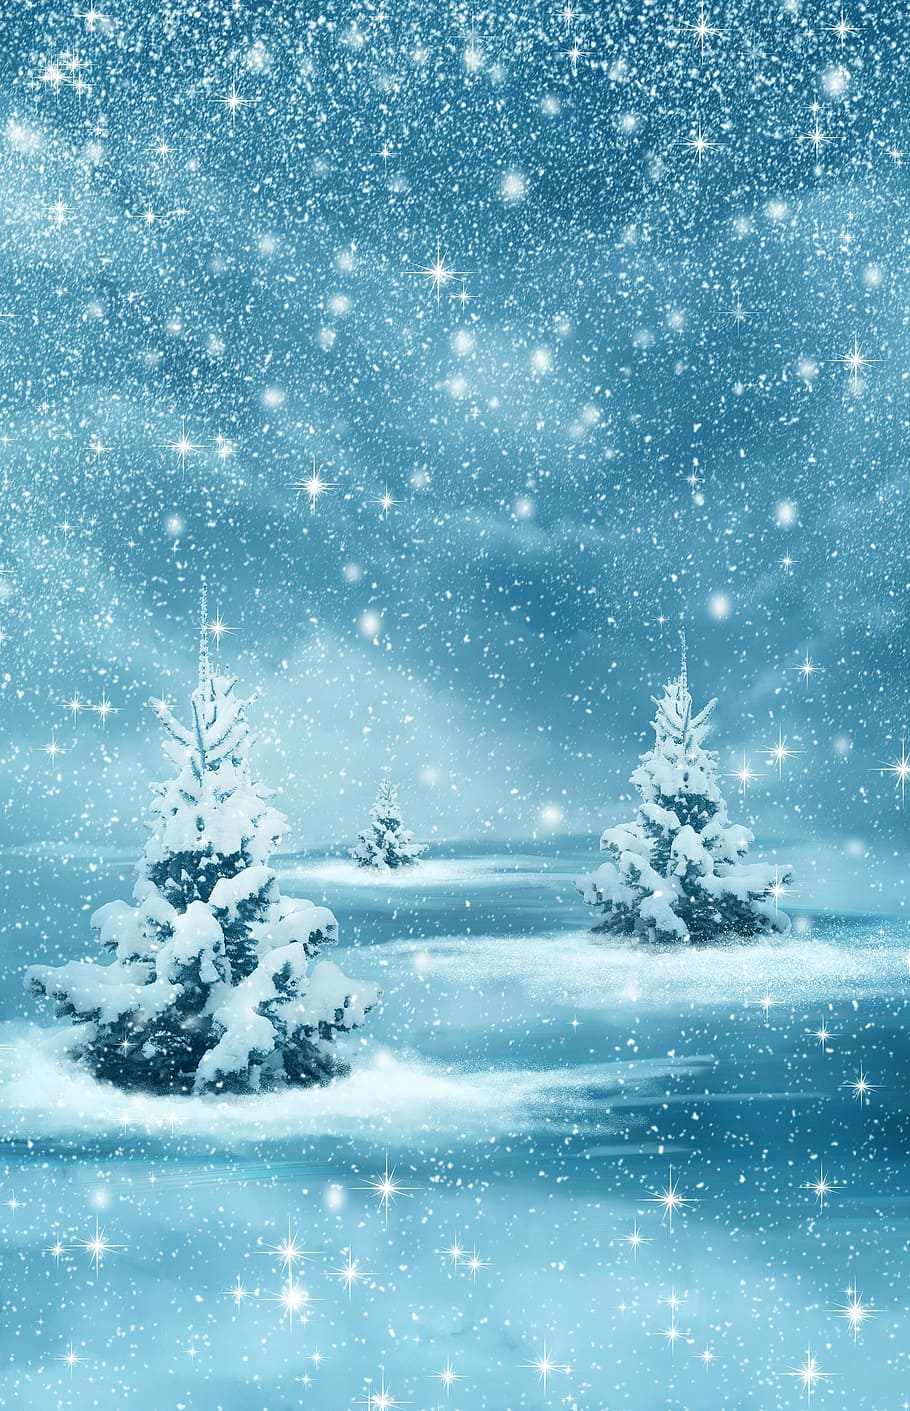 pohon cemara, ilustrasi salju, natal, tahun baru, latar belakang, musim dingin, alam, hutan, pohon, montase